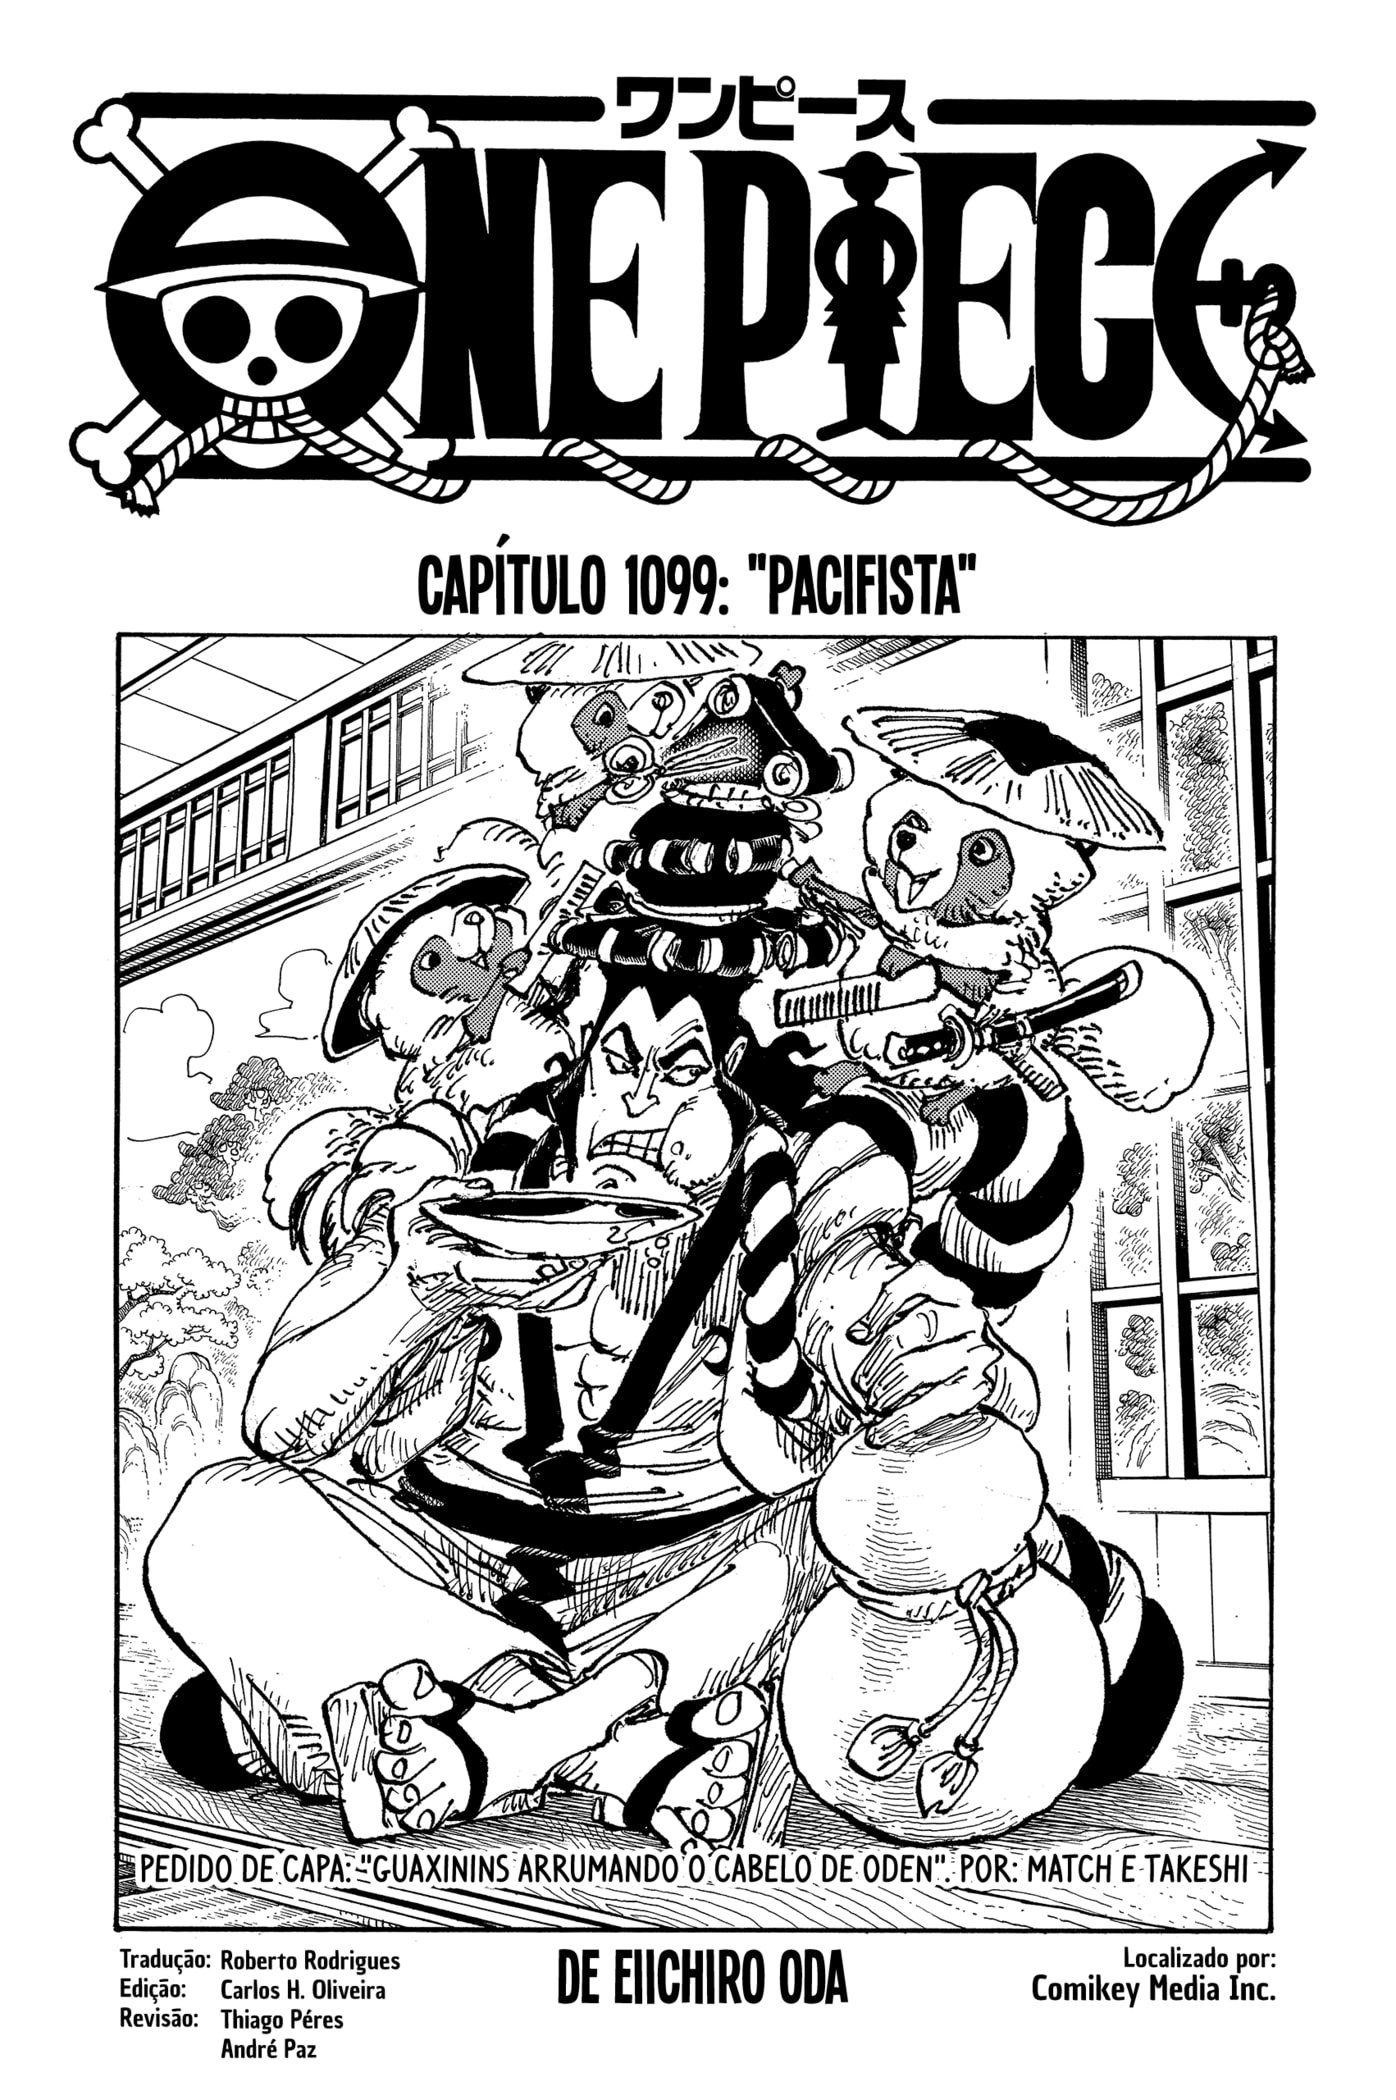 Mangá de One Piece passa a ter tradução oficial em português